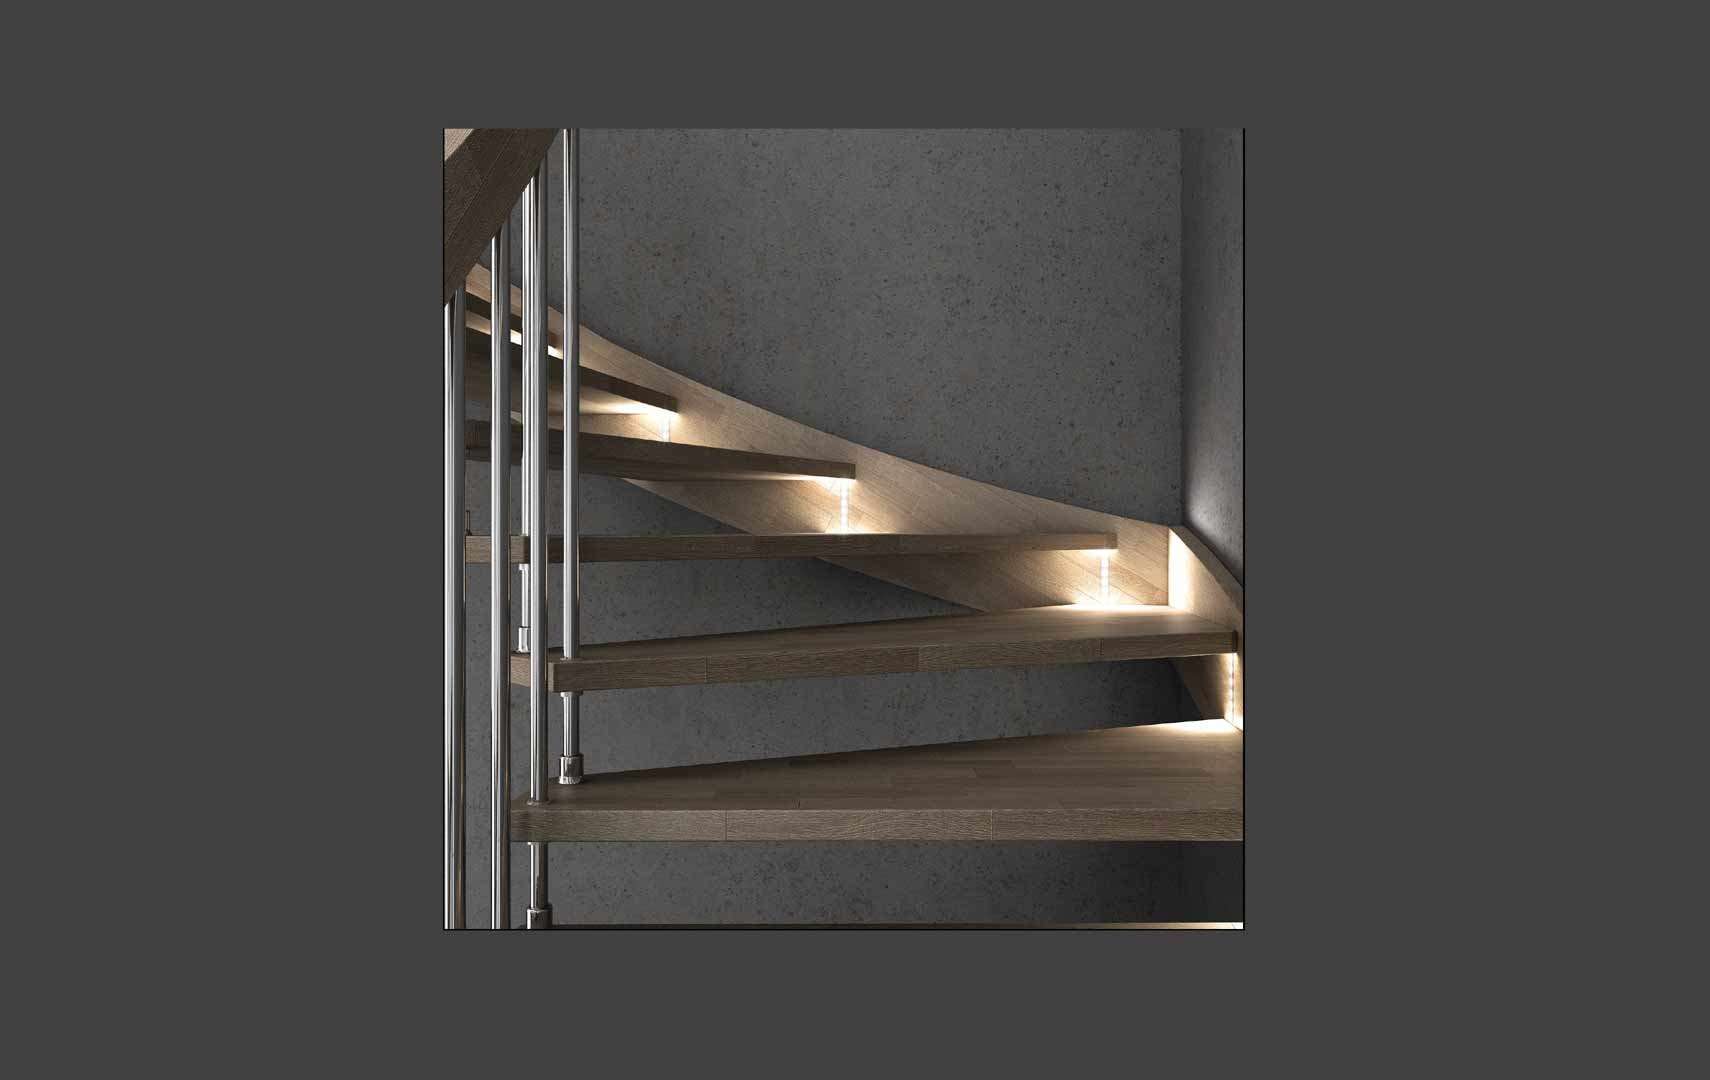 Fly chrome LED, Escalier moderne avec led escalier design